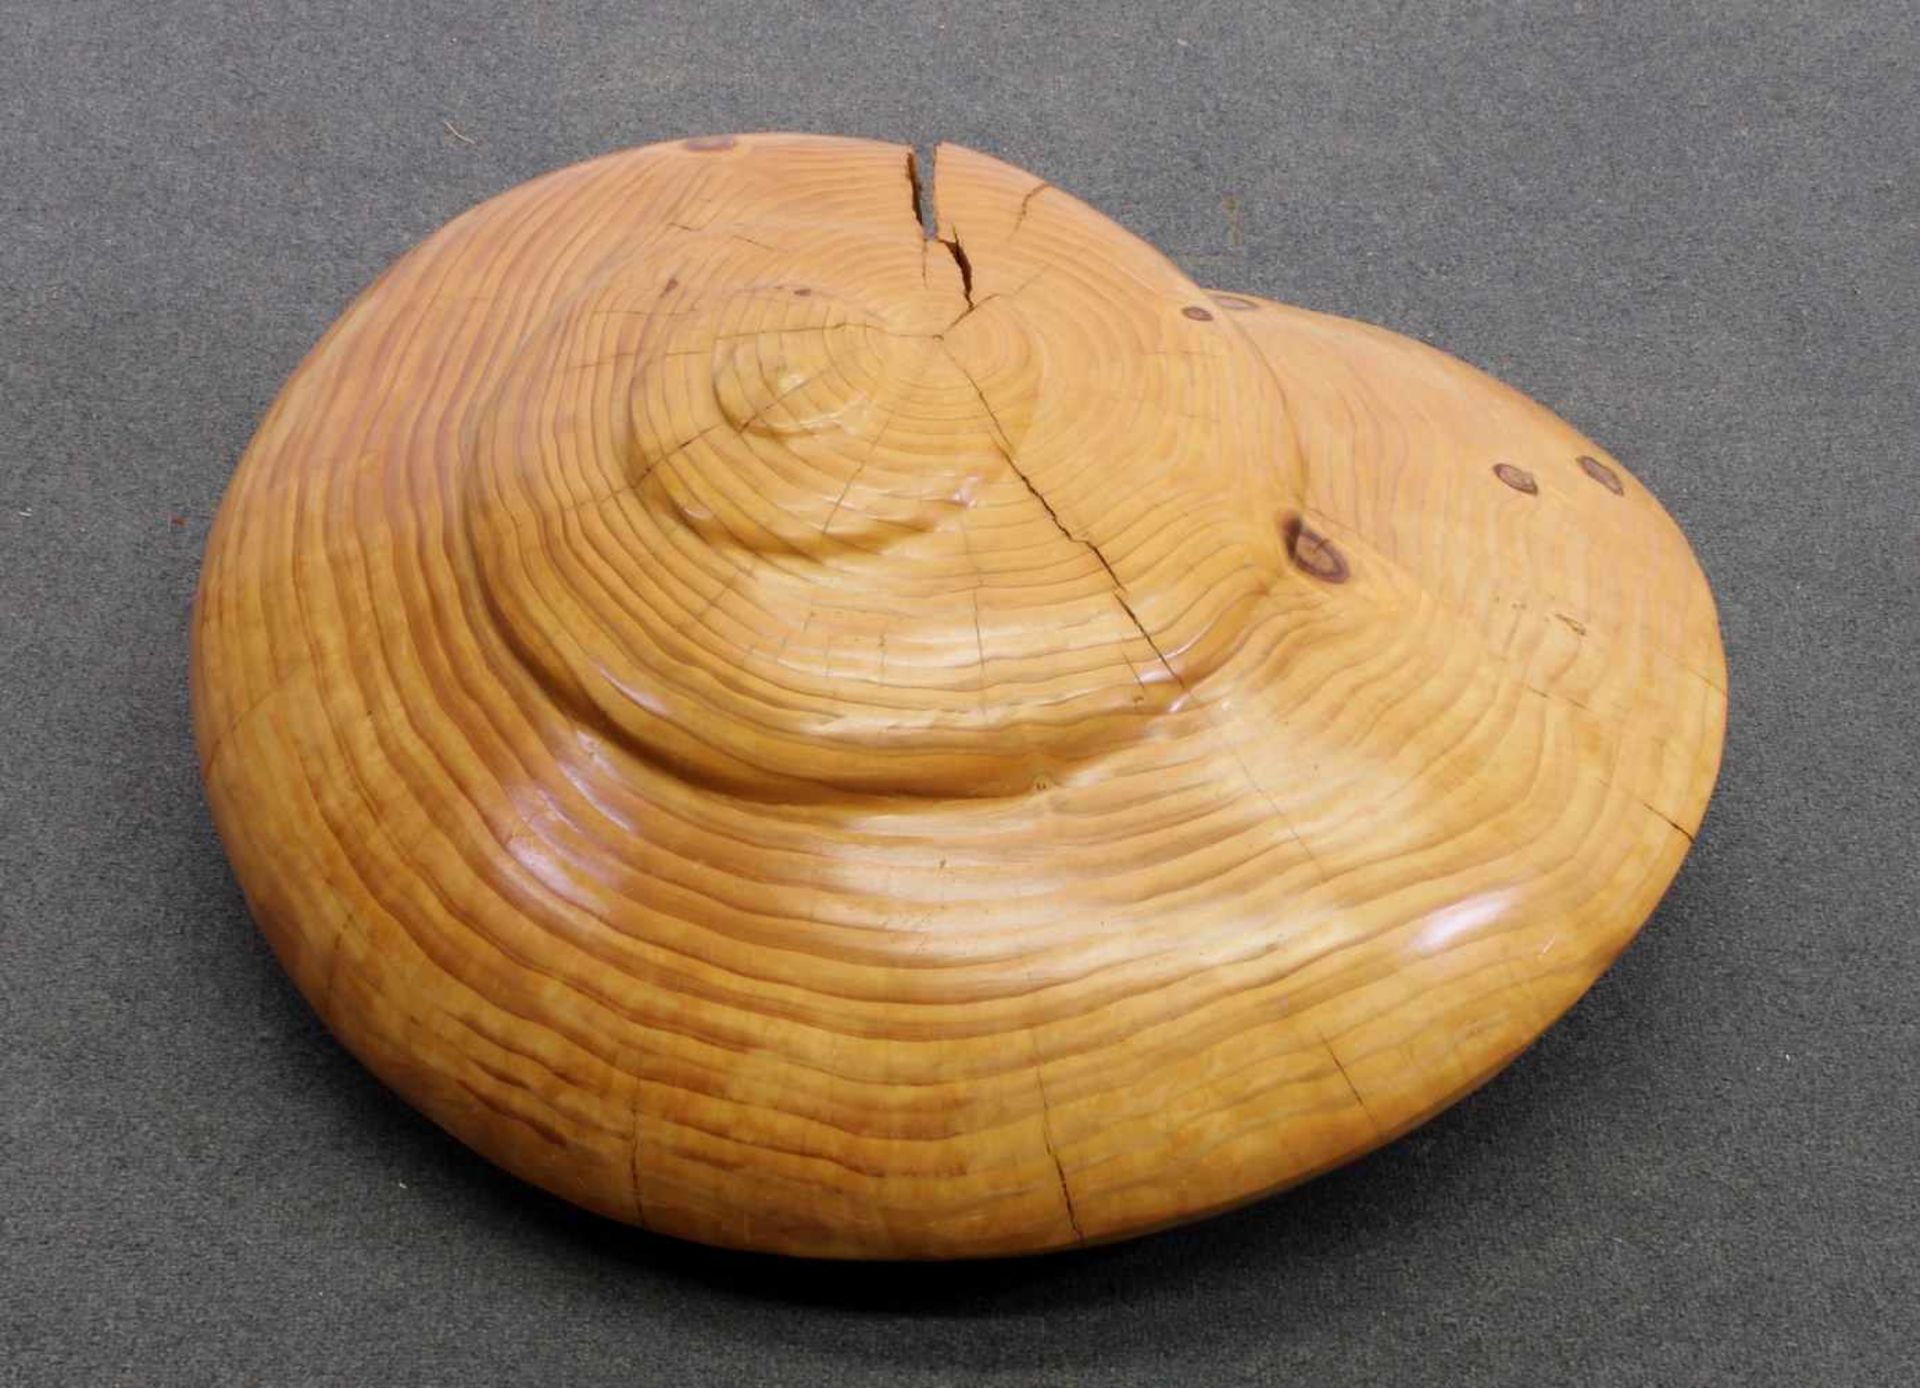 Holzobjekt, "Schnecke", ø ca. 60 cm, ca. 30 cm hoch, laut Angaben von Konert, gerissen